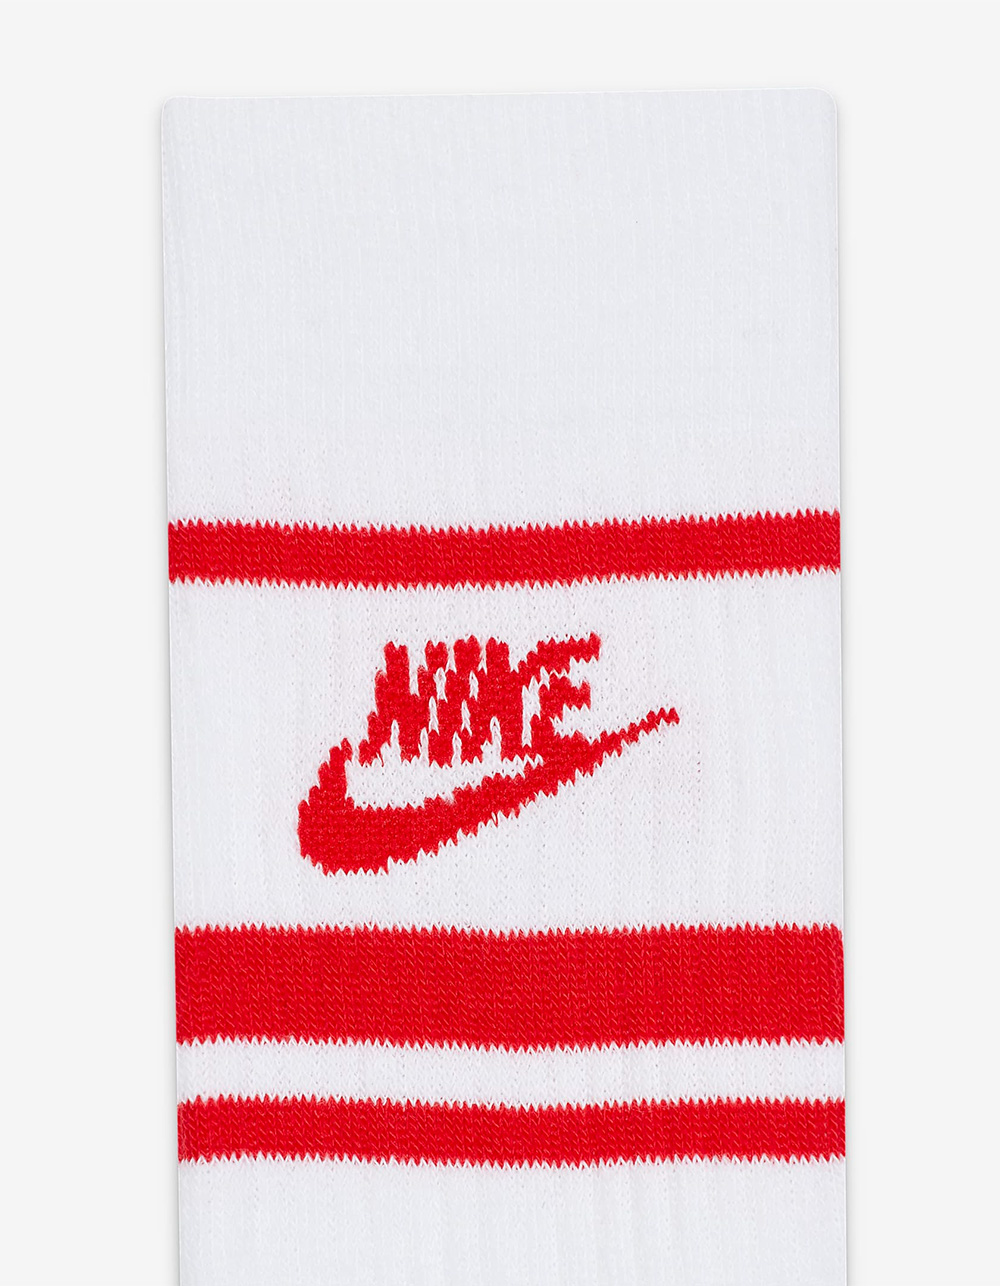 Nike Men's Sportswear Everyday Essential Crew Socks – 3 Pack